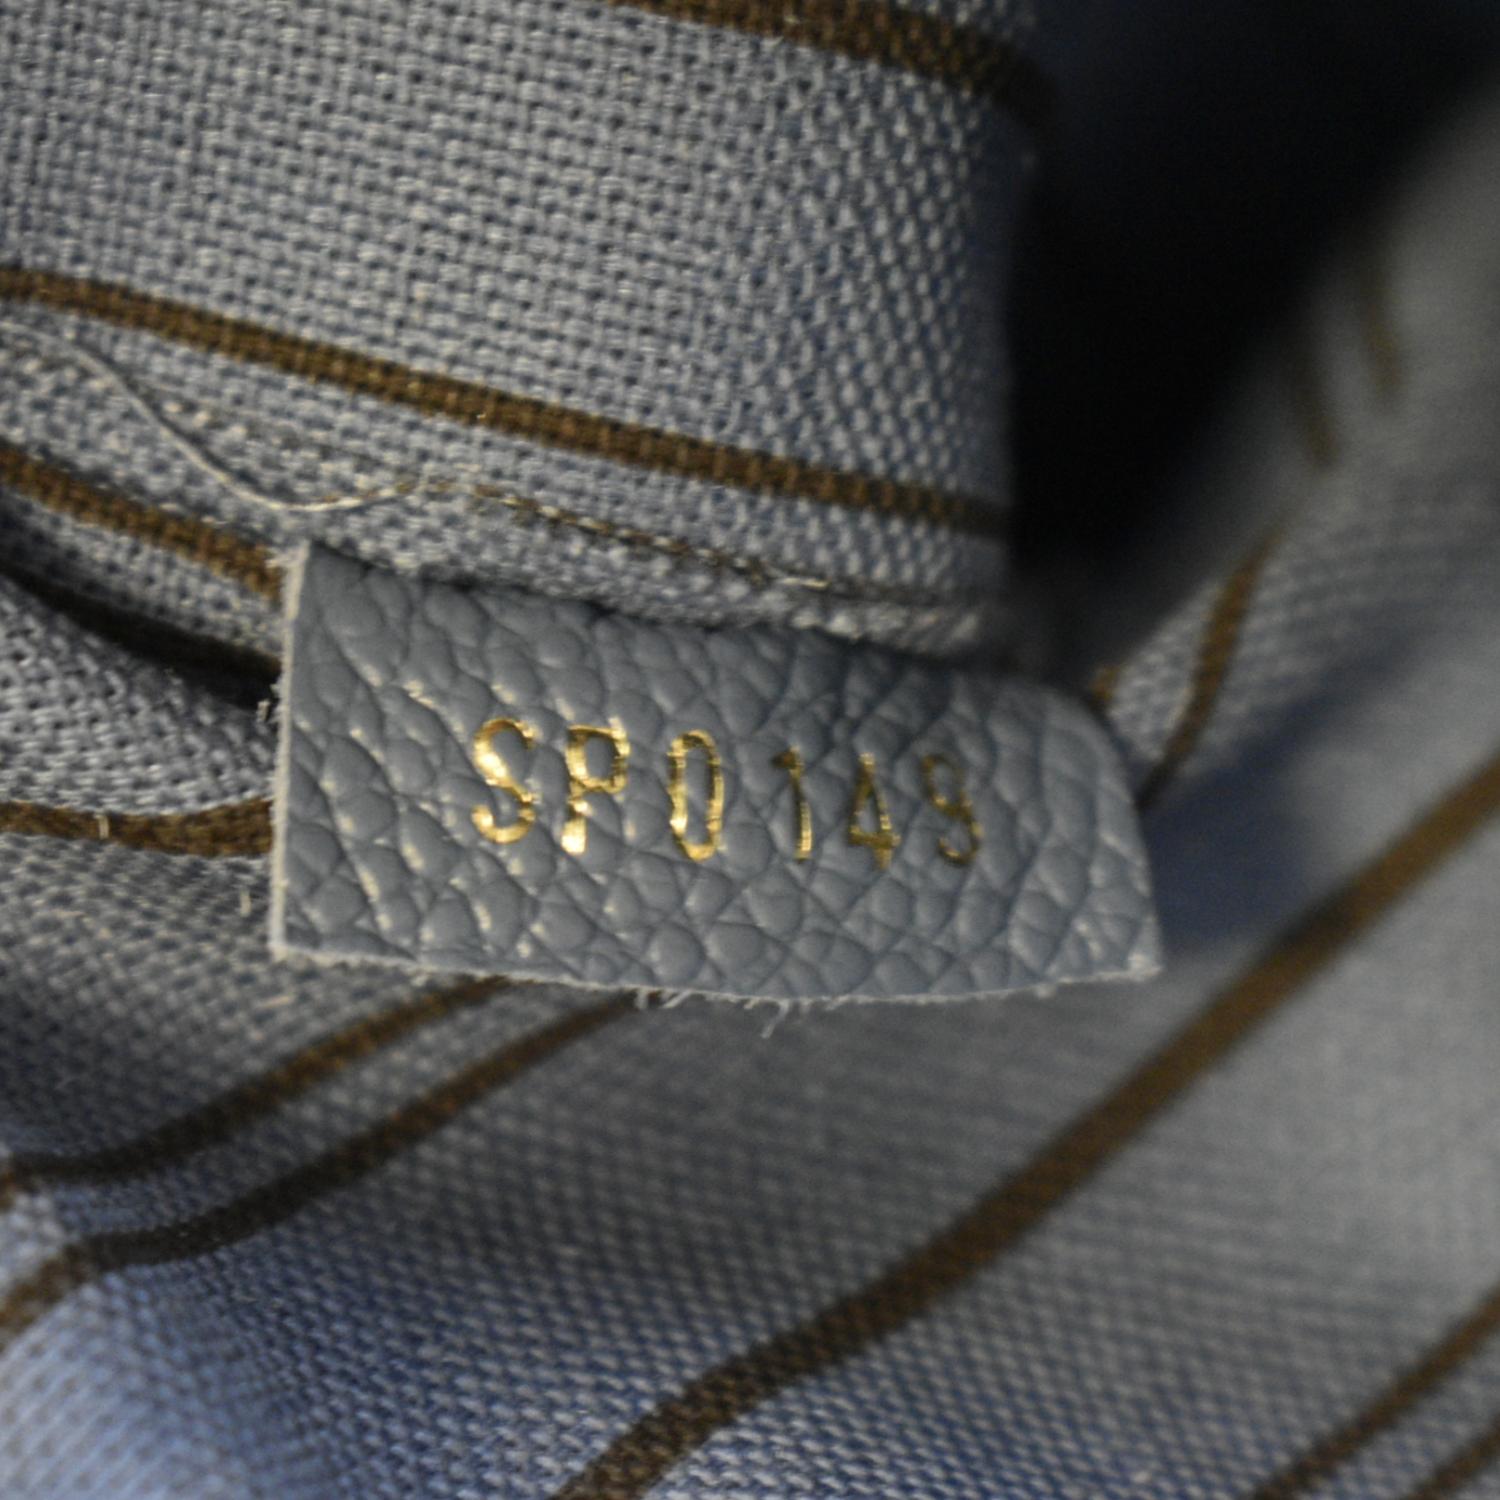 Louis Vuitton Blue Monogram Empreinte Leather Montaigne Bb (Authentic Pre-  Owned) - ShopStyle Shoulder Bags